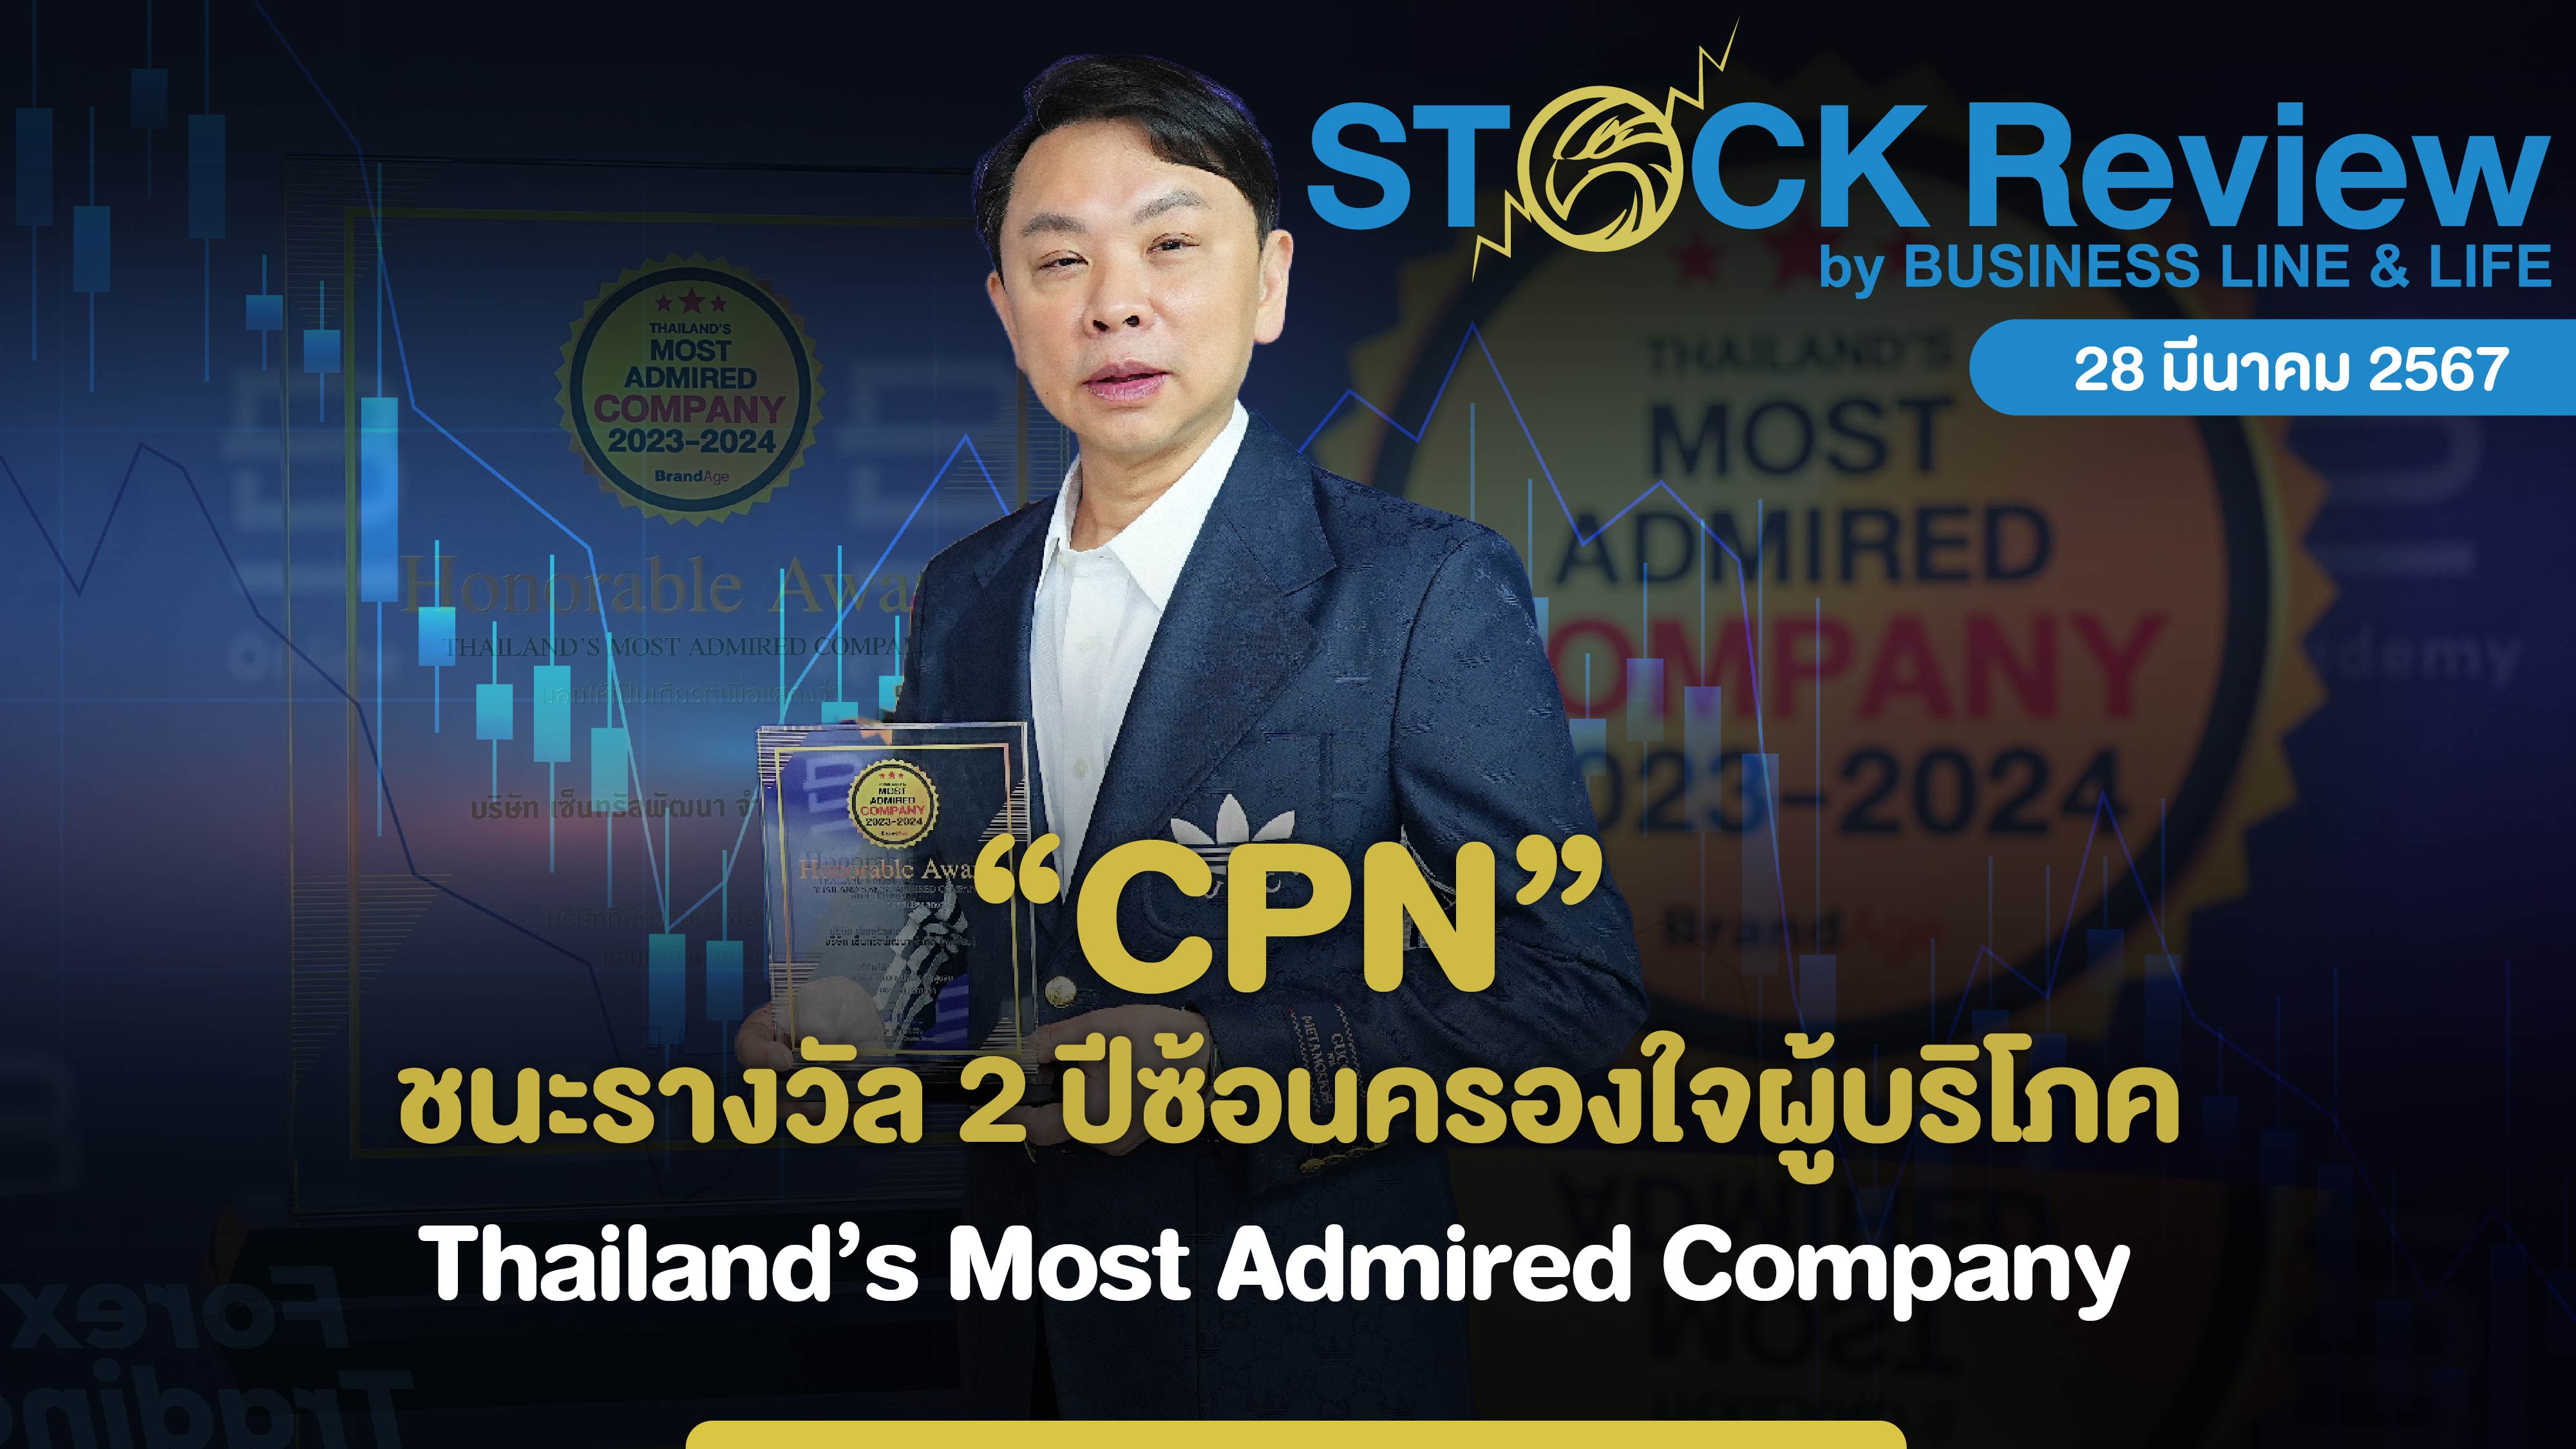 “เซ็นทรัลพัฒนา” ชนะรางวัล 2 ปีซ้อนครองใจผู้บริโภค Thailand’s Most Admired Company